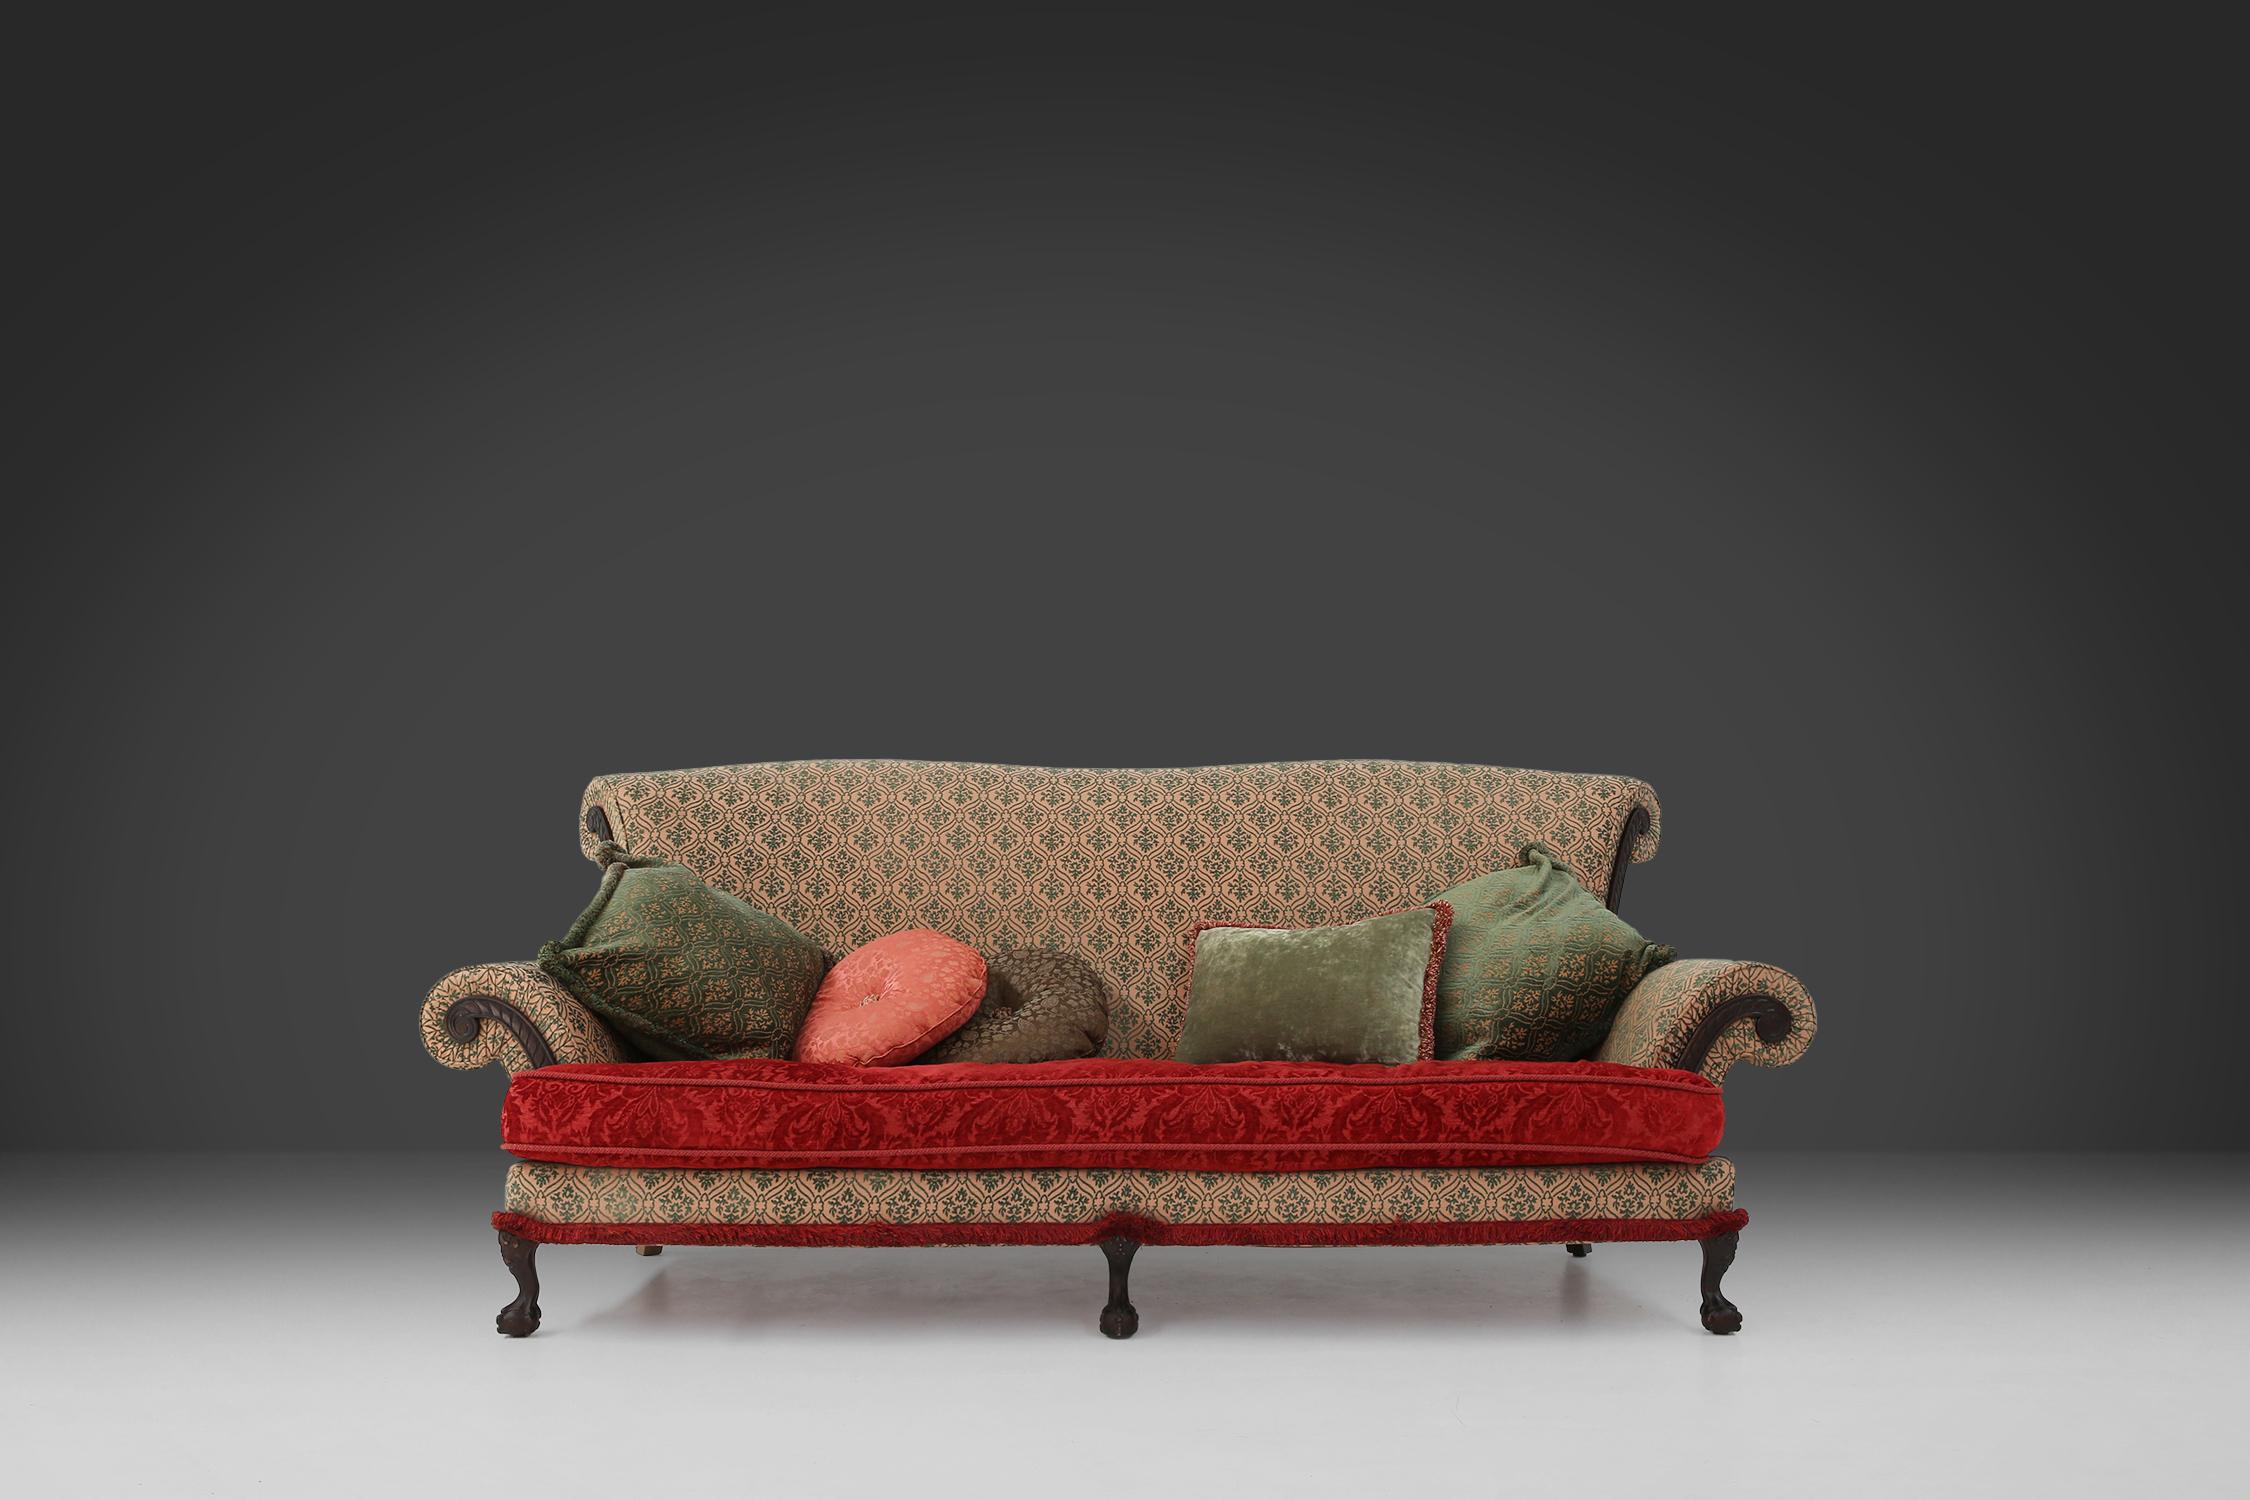 Ce grand canapé victorien datant de 1890 est doté d'une assise confortable et profonde qui vous permet de vous détendre. L'assise est en bois massif et possède d'élégants pieds griffes et boules, qui lui confèrent une allure classique. Le tissu du